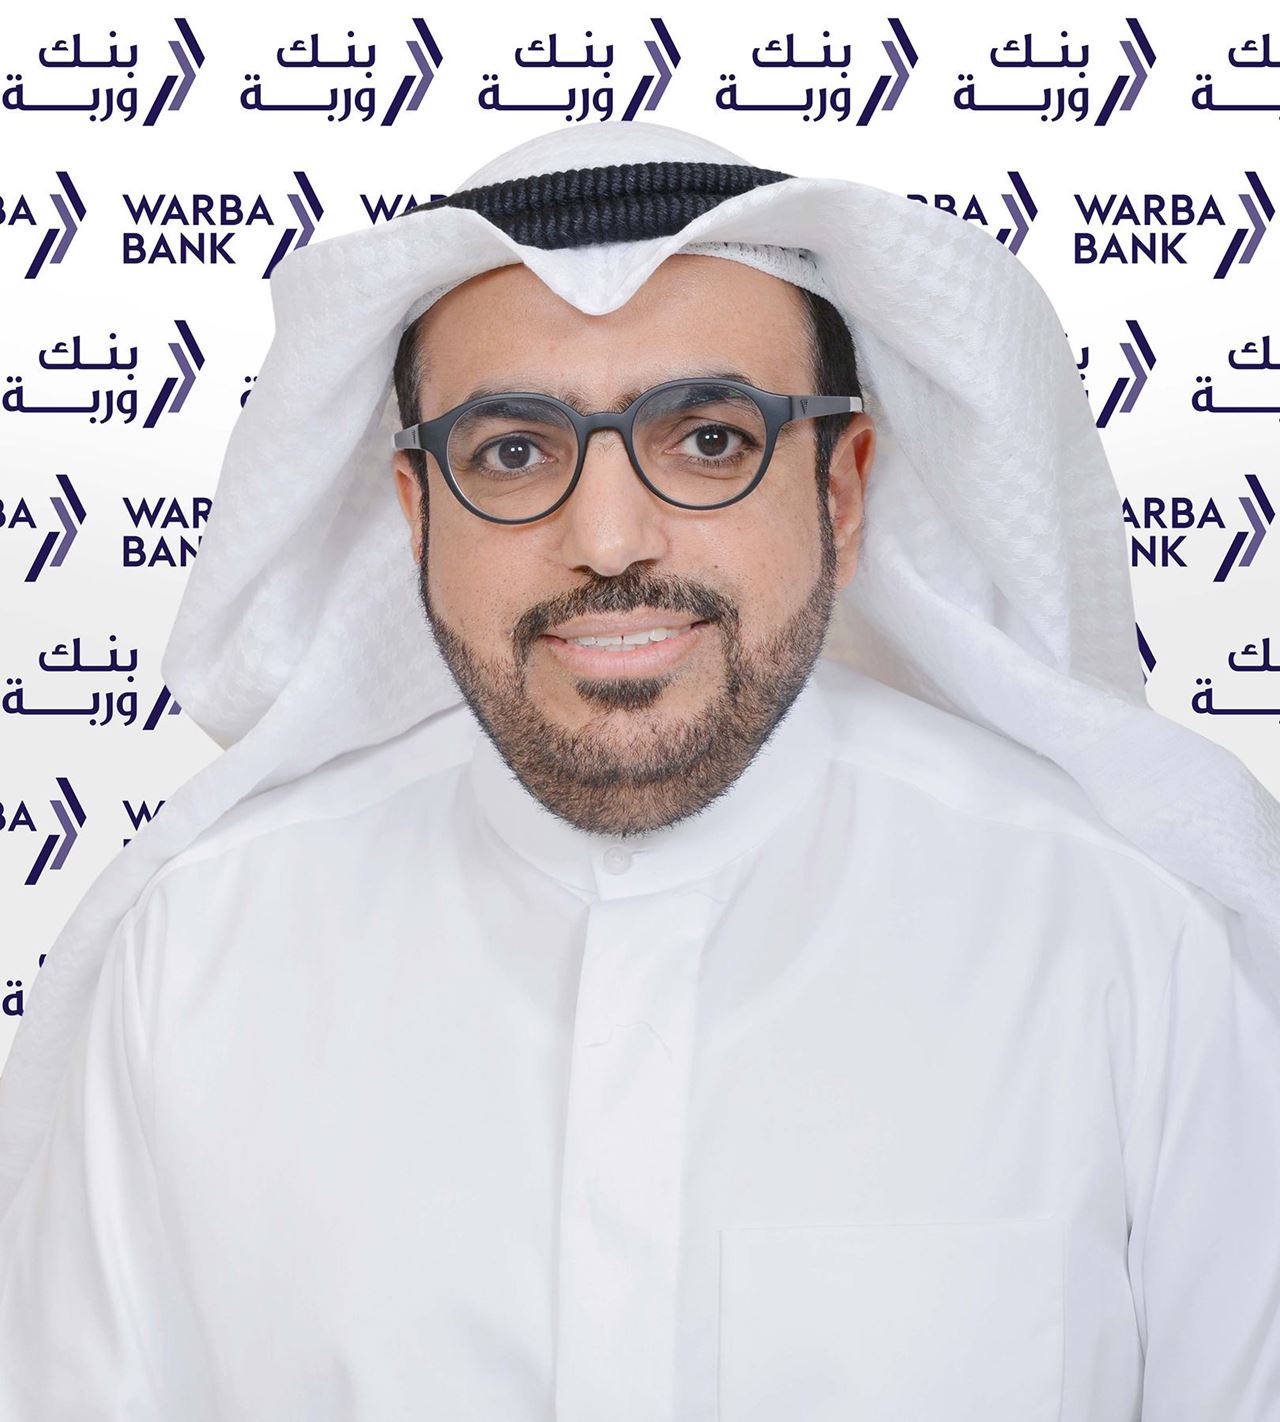 السيد شاهين حمد الغانم – الرئيس التنفيذي لبنك وربة